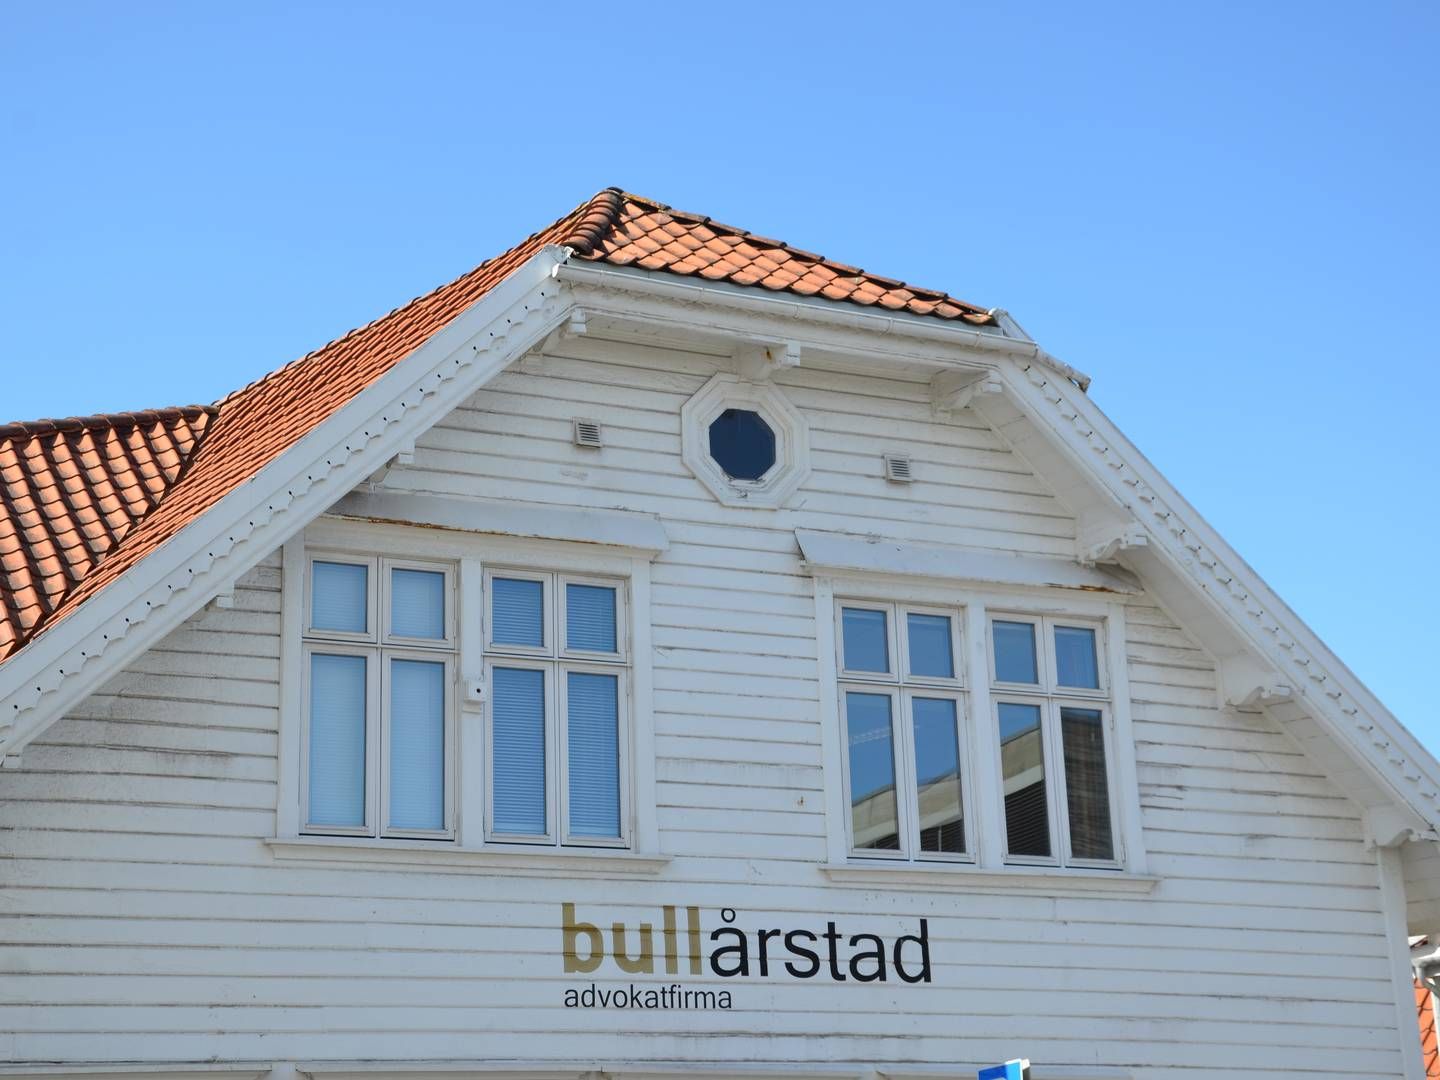 BRYTER SAMARBEID: Boligbyggelag dropper videre samarbeid med Bull Årstad. | Photo: Aleksander Simonsen Losnegård / AdvokatWatch